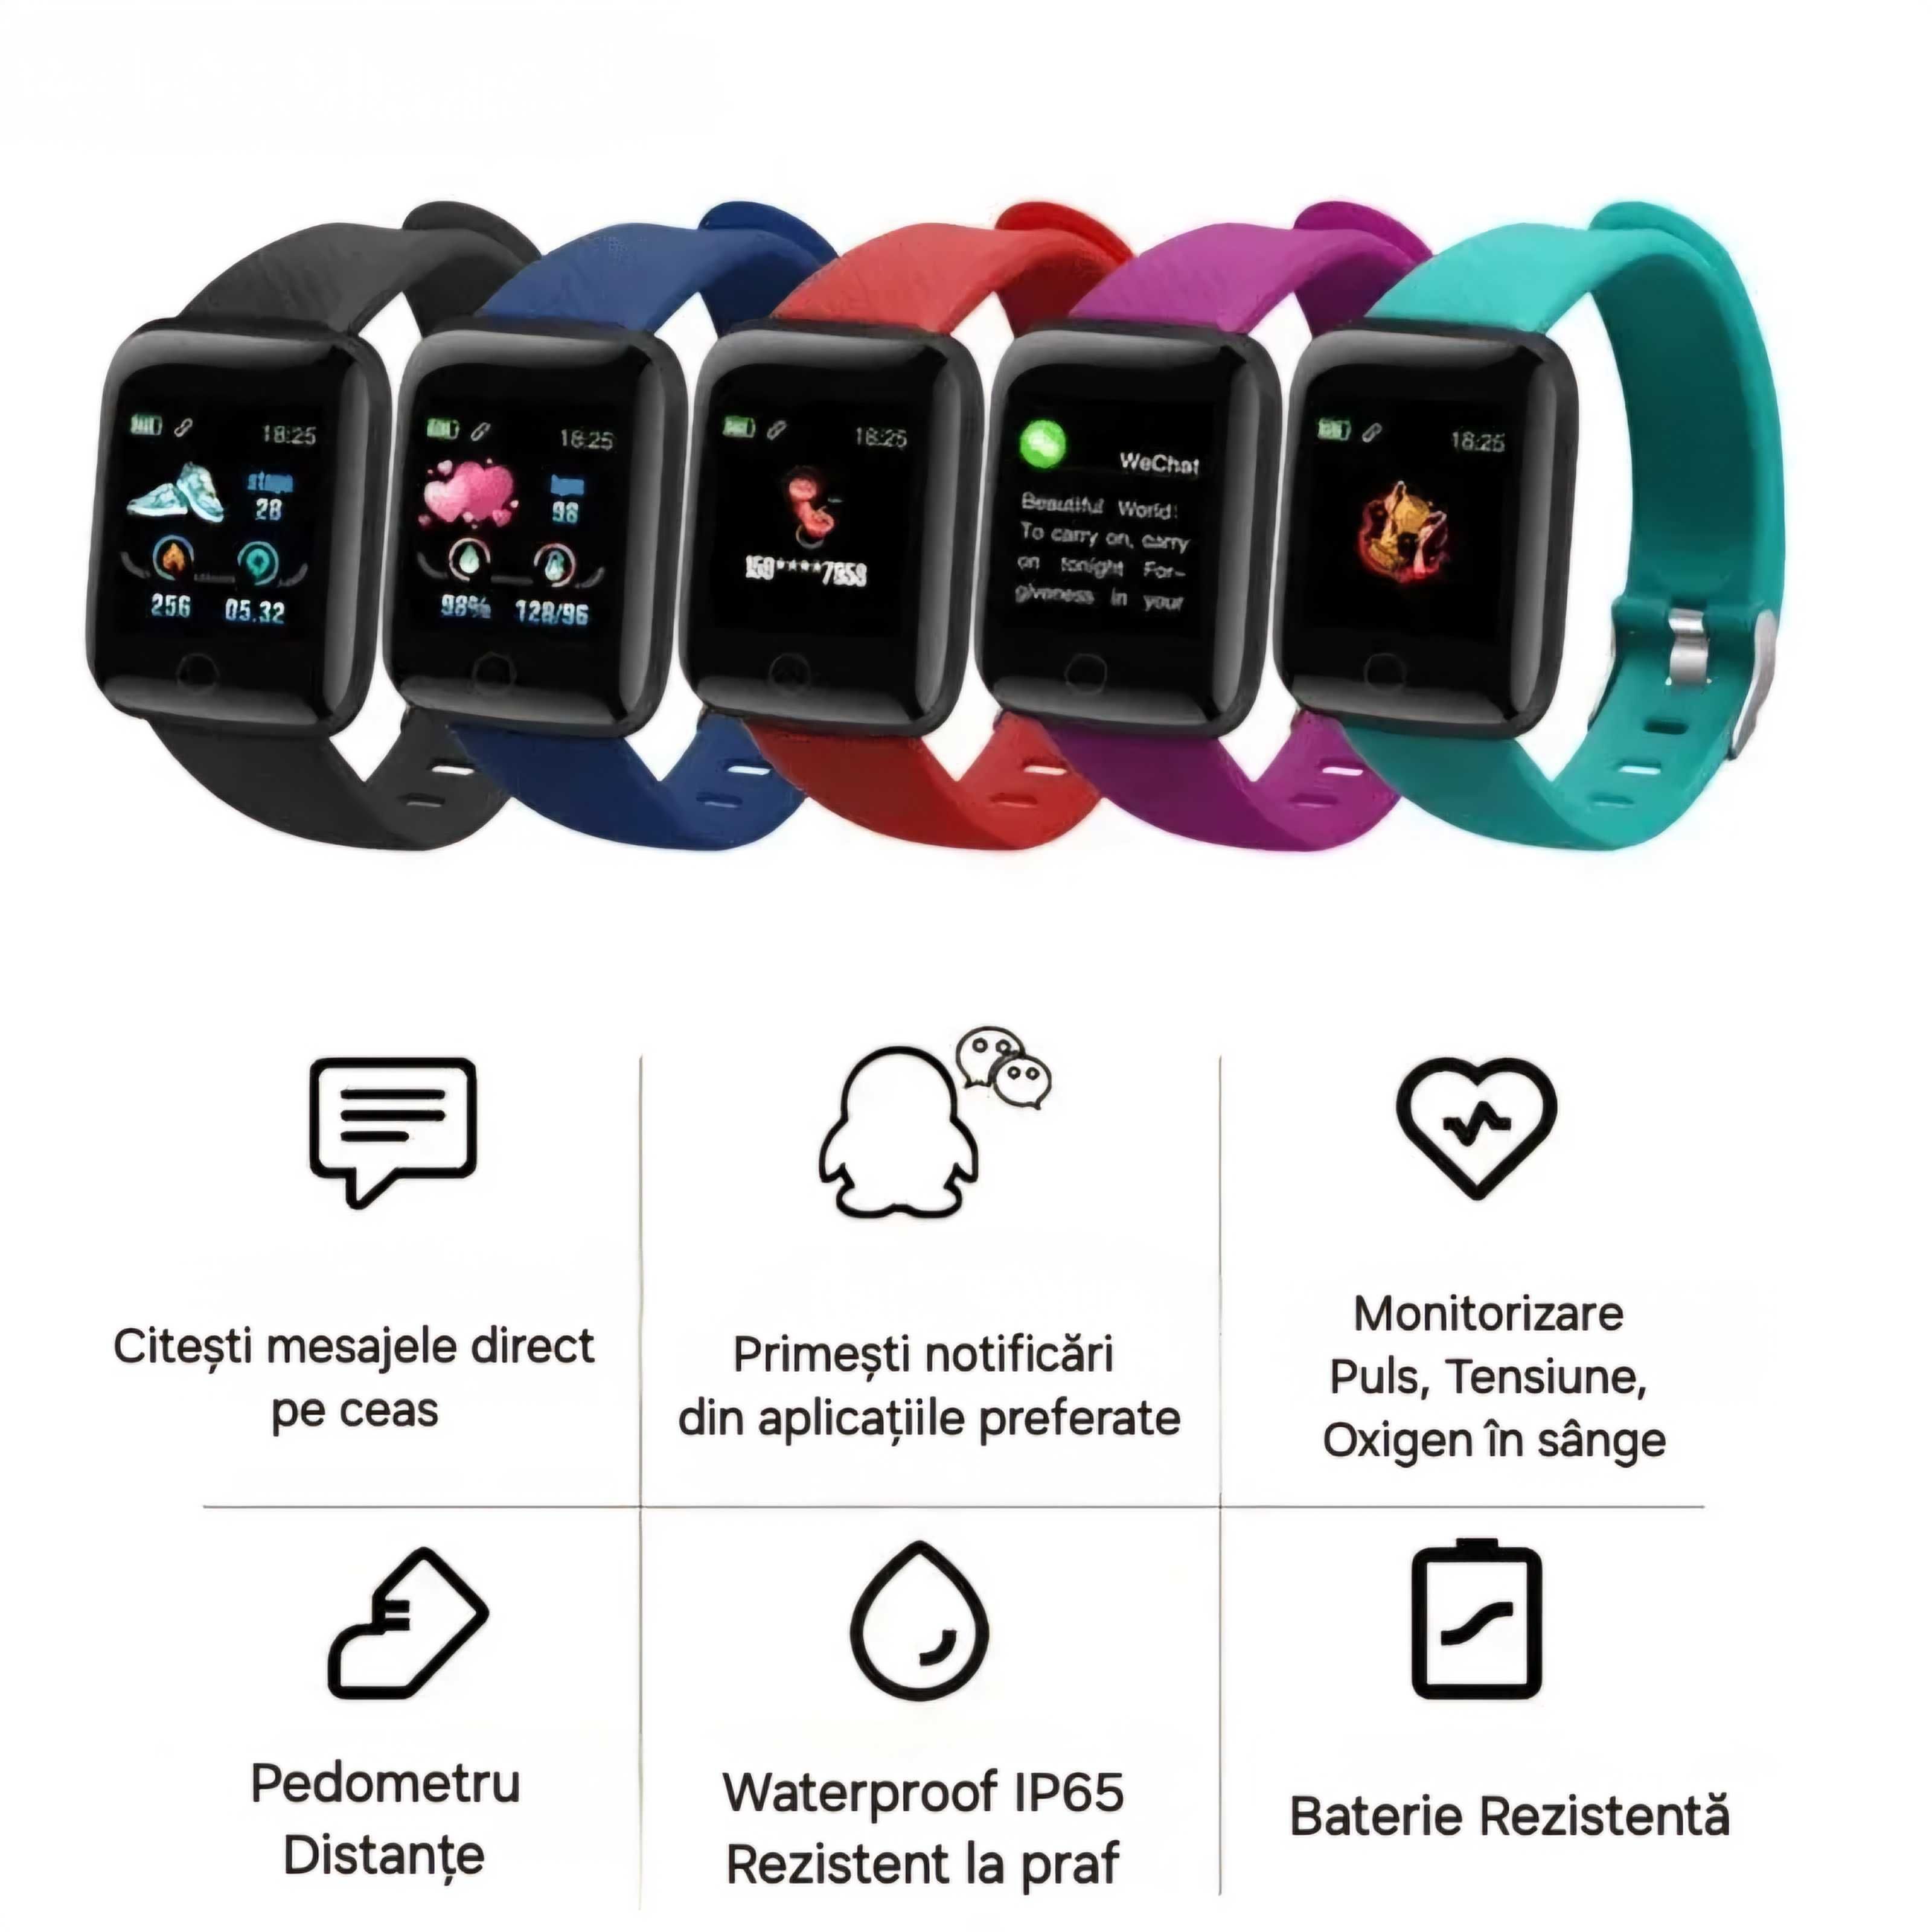 Smartwatch Blue: Vezi apeluri, mesaje, notificari. Mod sport/sănătate